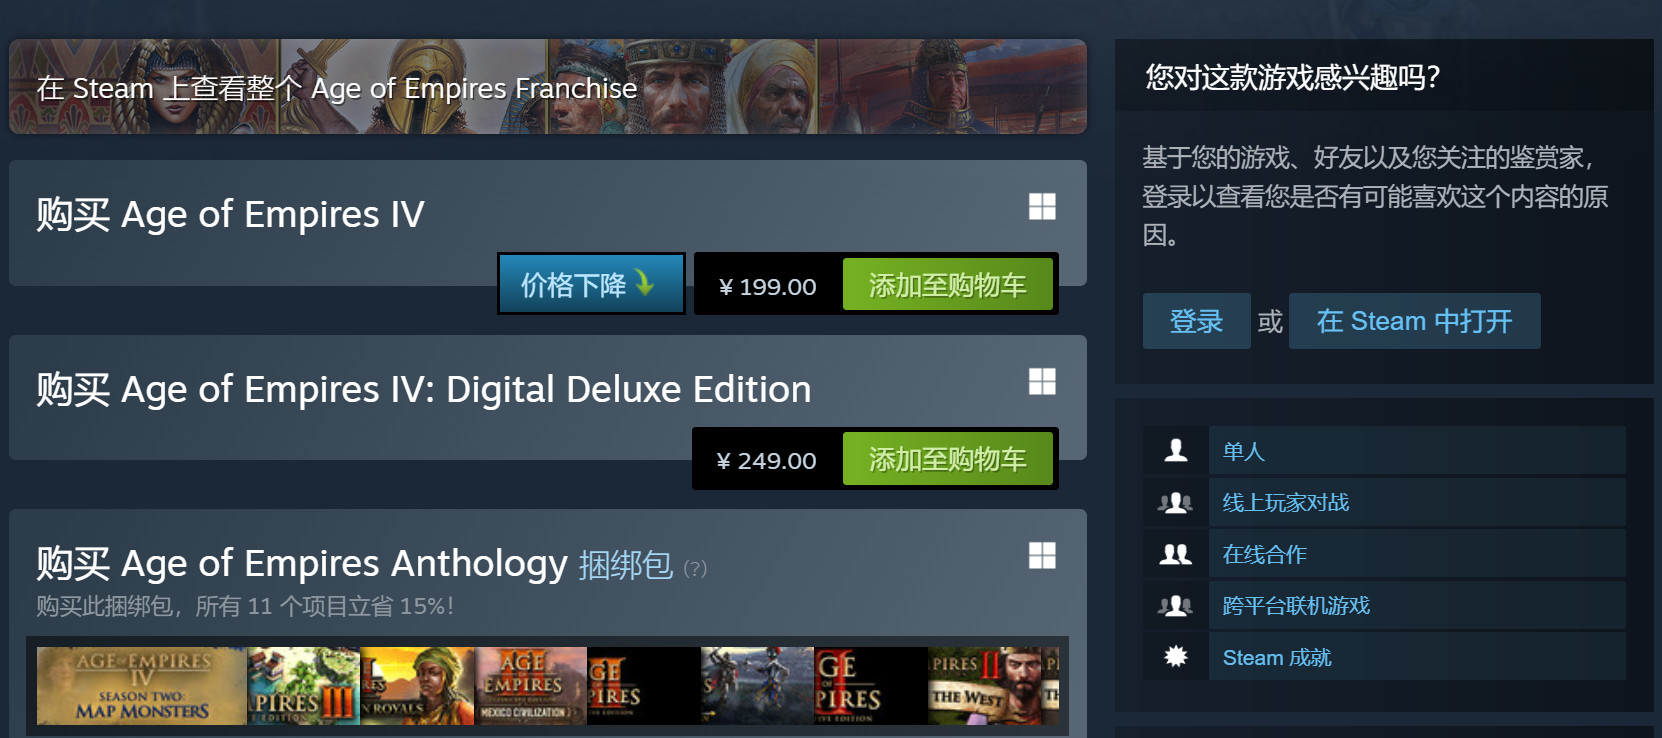 《帝国时代4》Steam国区价格降至199元 目前评价特别好评